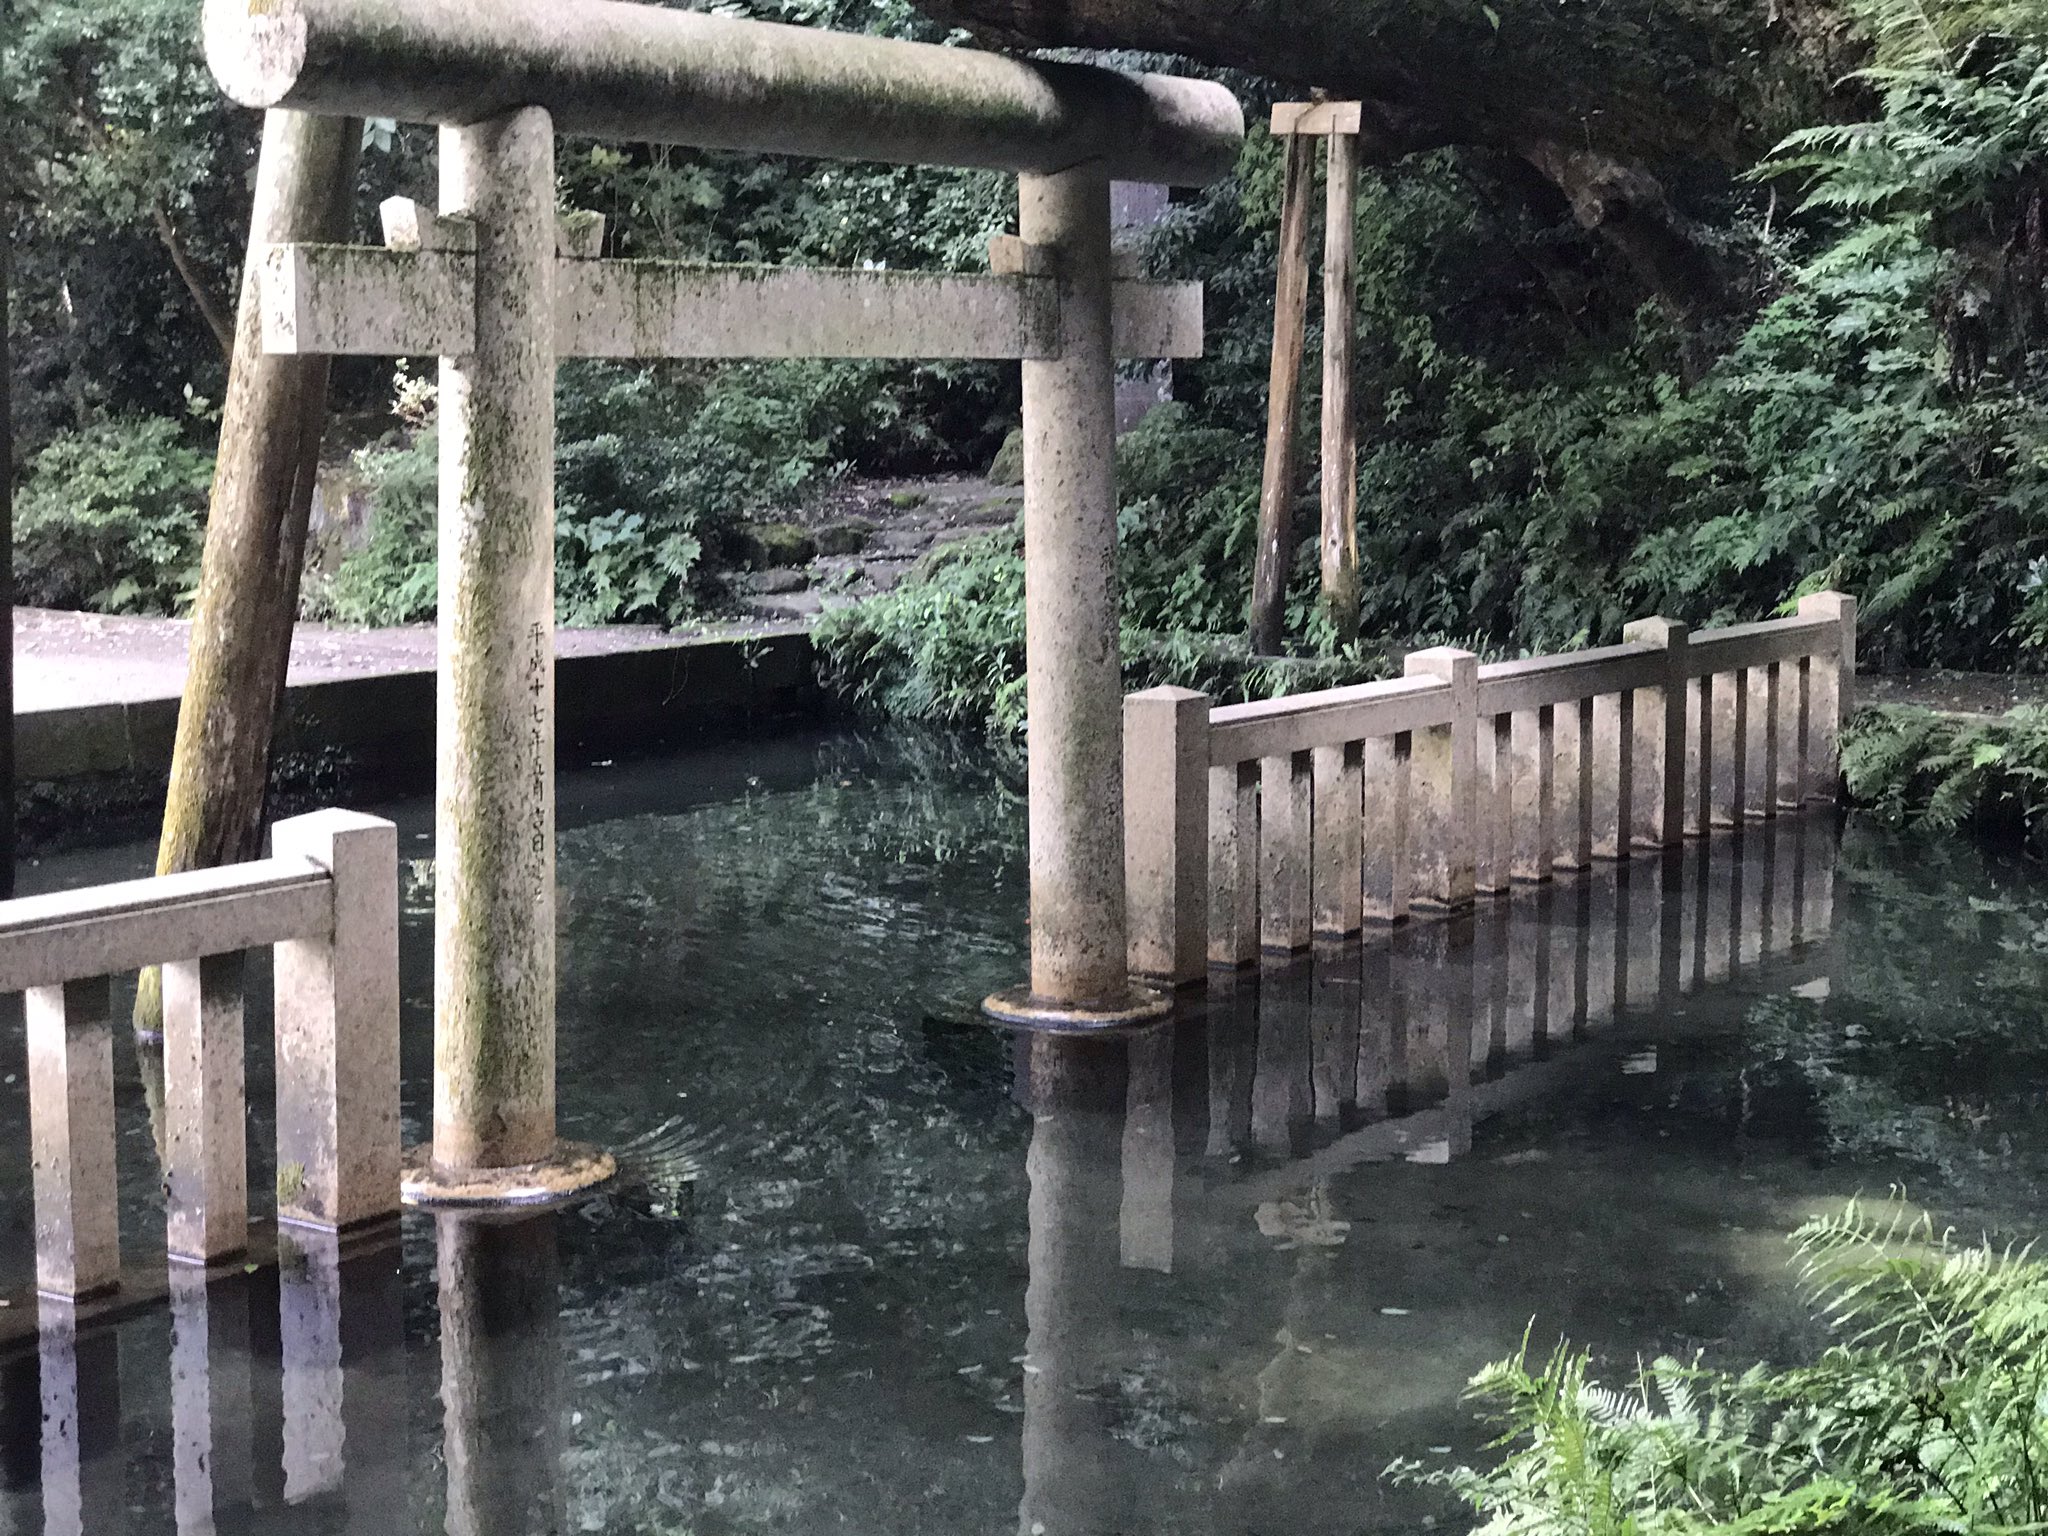 石井孝明 Ishii Takaaki 鹿島神宮の潔斎用の池ですがイスラエルのユダヤ教の遺跡で見たものとそっくりで驚きました鳥居以外